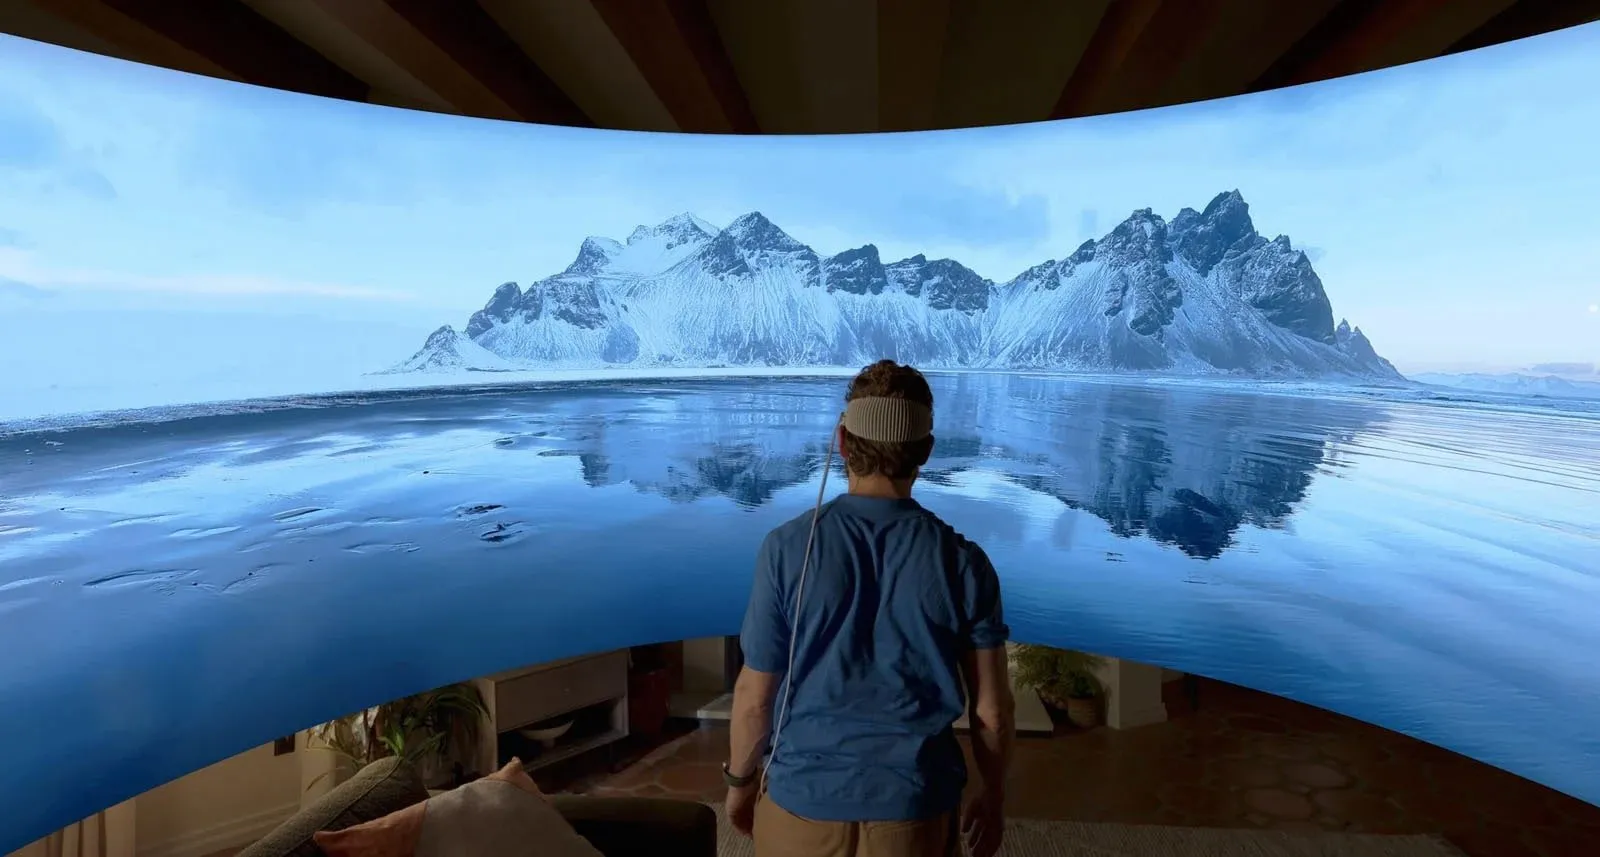 일부 빙산의 180도 파노라마 이미지 속으로 걸어가는 사람. 그들은 Apple Vision Pro 헤드셋을 착용하고 프레임 중앙에 있습니다.